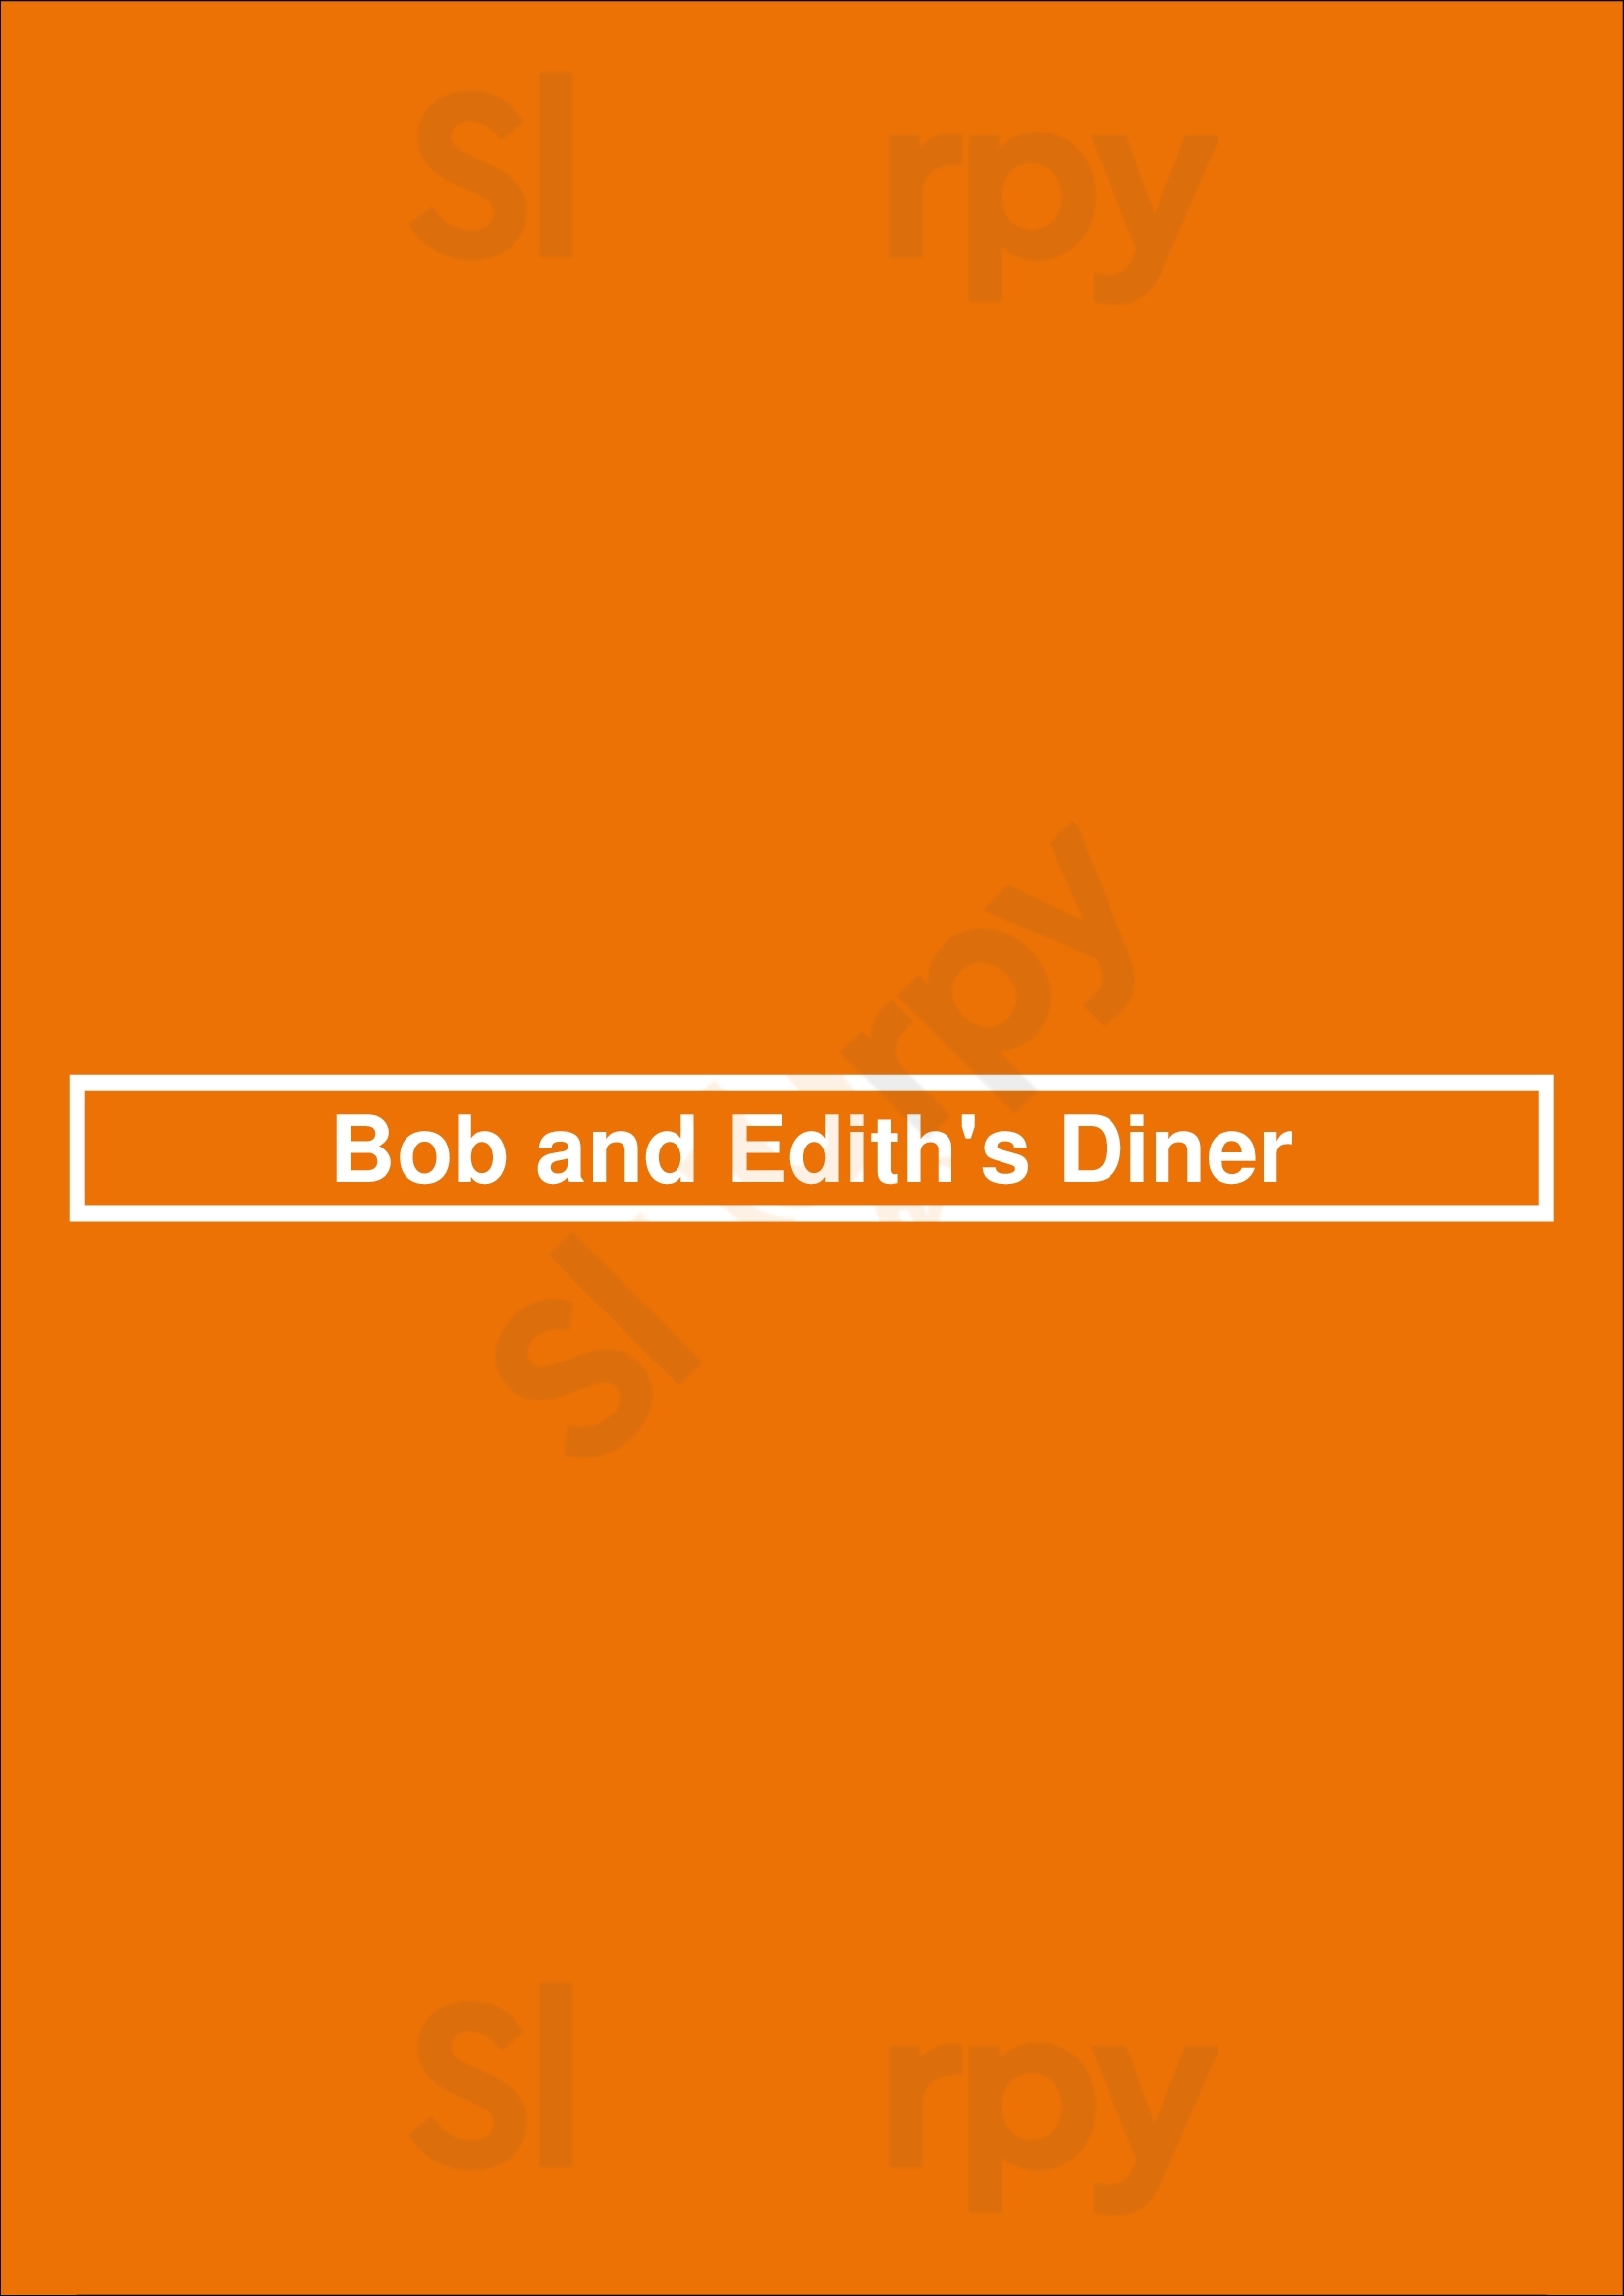 Bob And Edith's Diner Alexandria Menu - 1